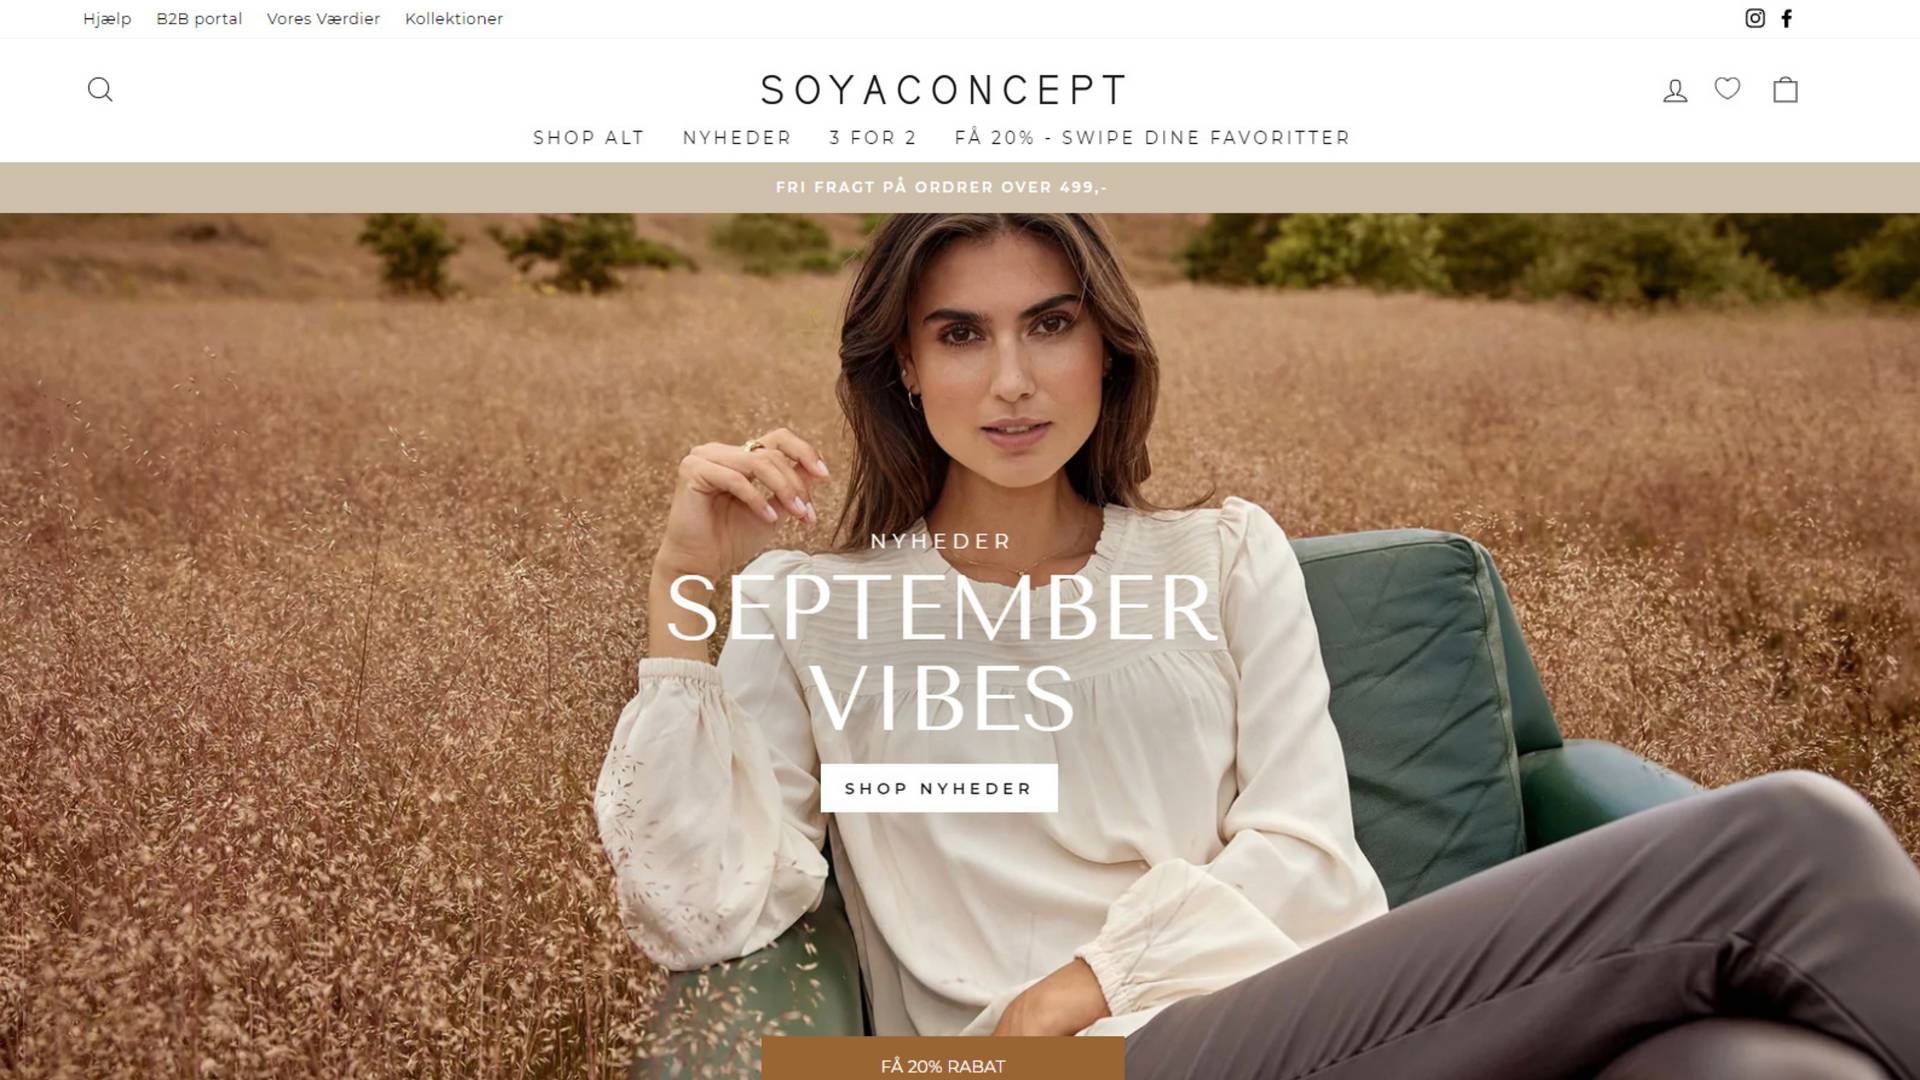 Soya Concept blev stiftet i 2002 af Torben Brodersen og Thomas Skare Viller. | Foto: Skærmbillede/Soya Concept